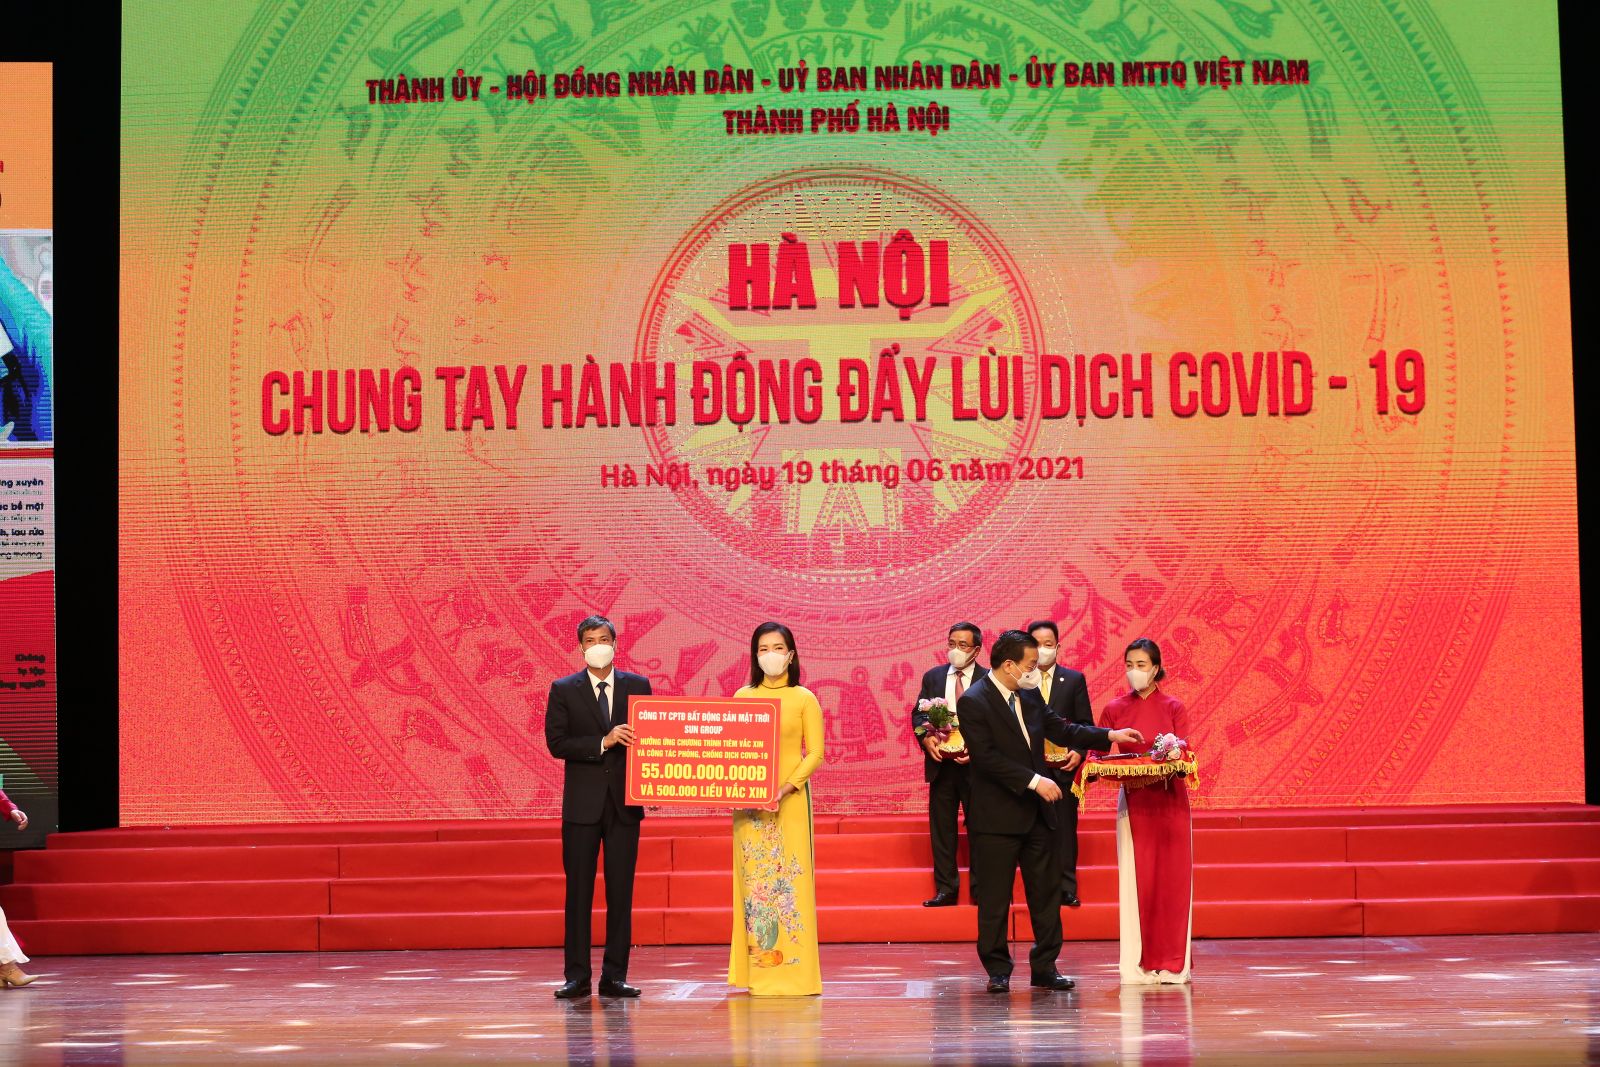 Tập đoàn Sun Group ủng hộ TP. Hà Nội 55 tỷ đồng mua vắc-xin phòng chống Covid-19